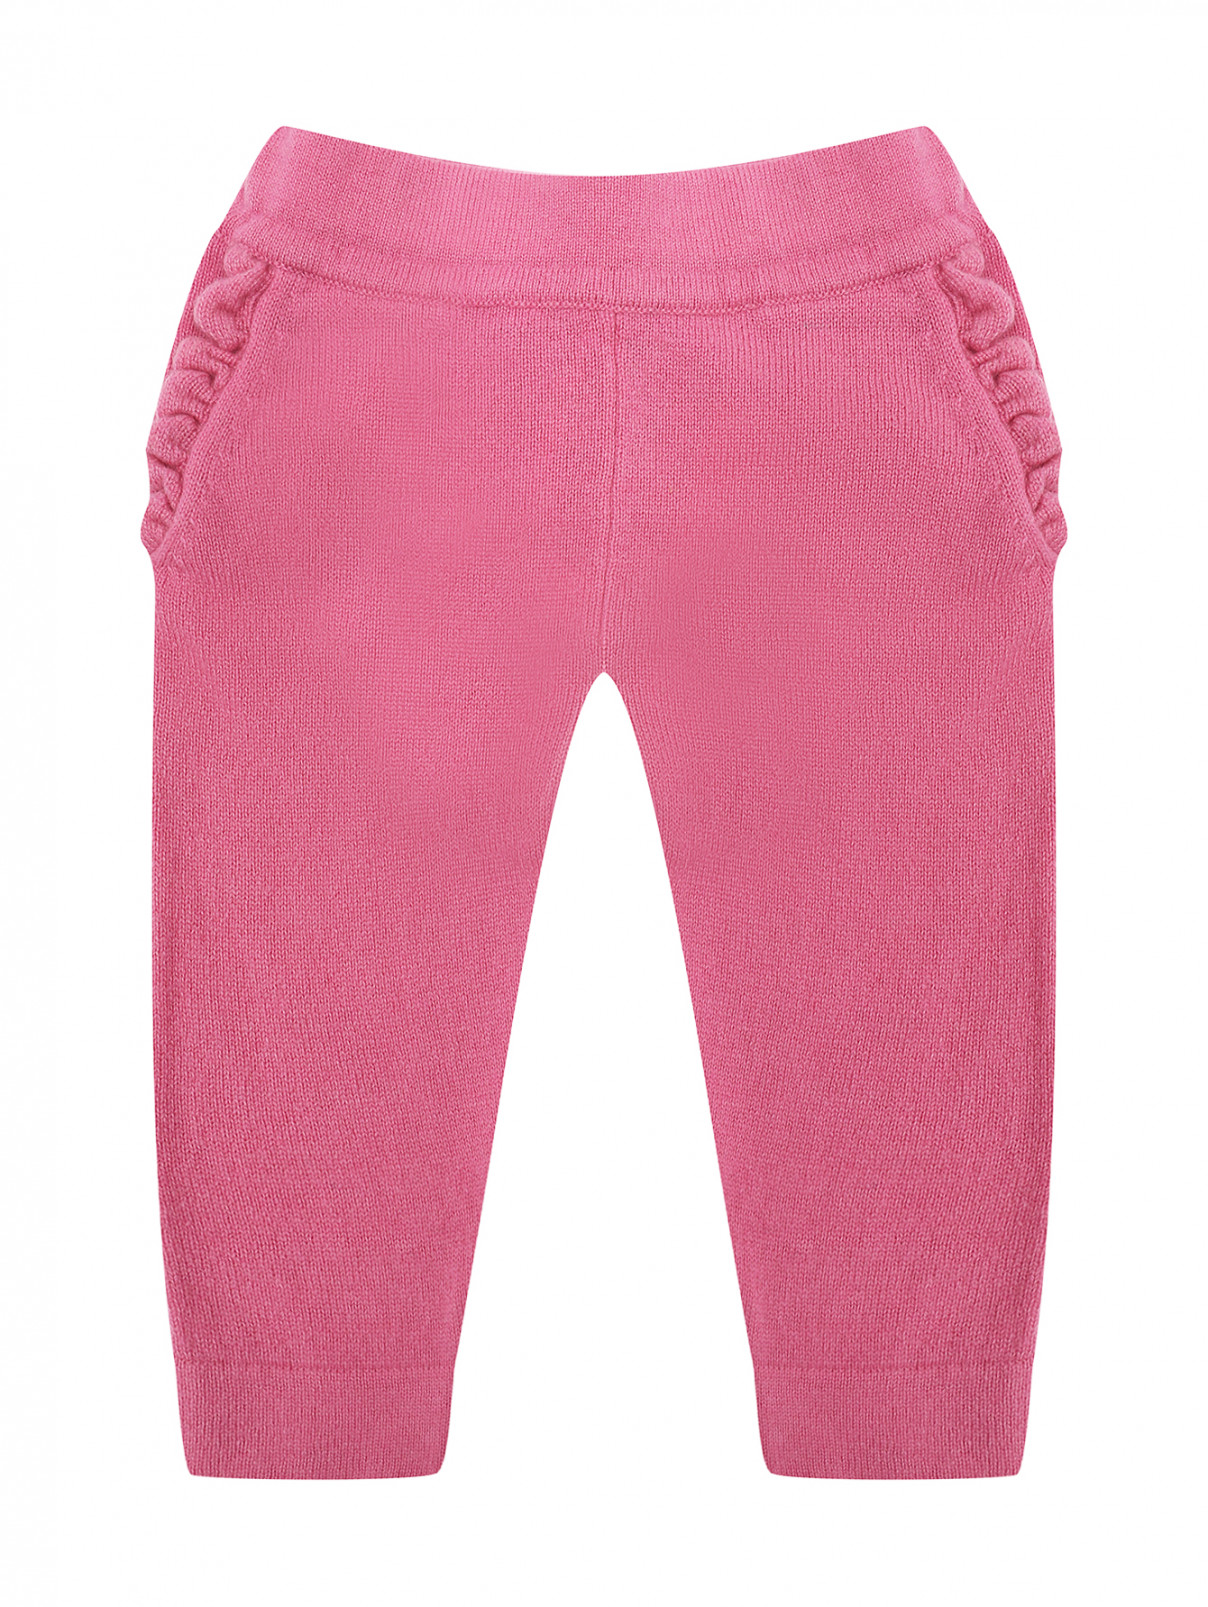 Брюки из кашемира с карманами Kyo  –  Общий вид  – Цвет:  Розовый